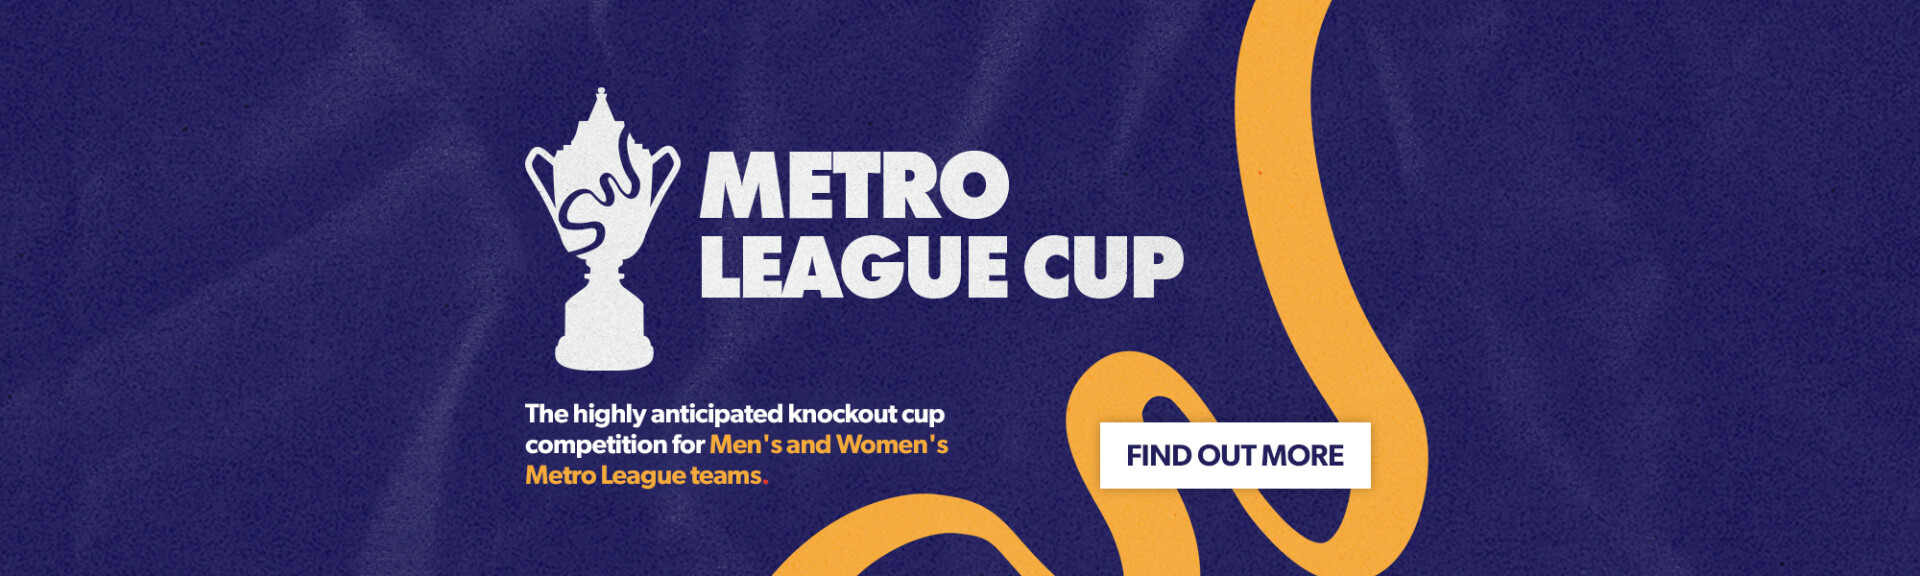 2403001 - Comps - Metro League Cup Launch - Web Banner - 1920 x 580